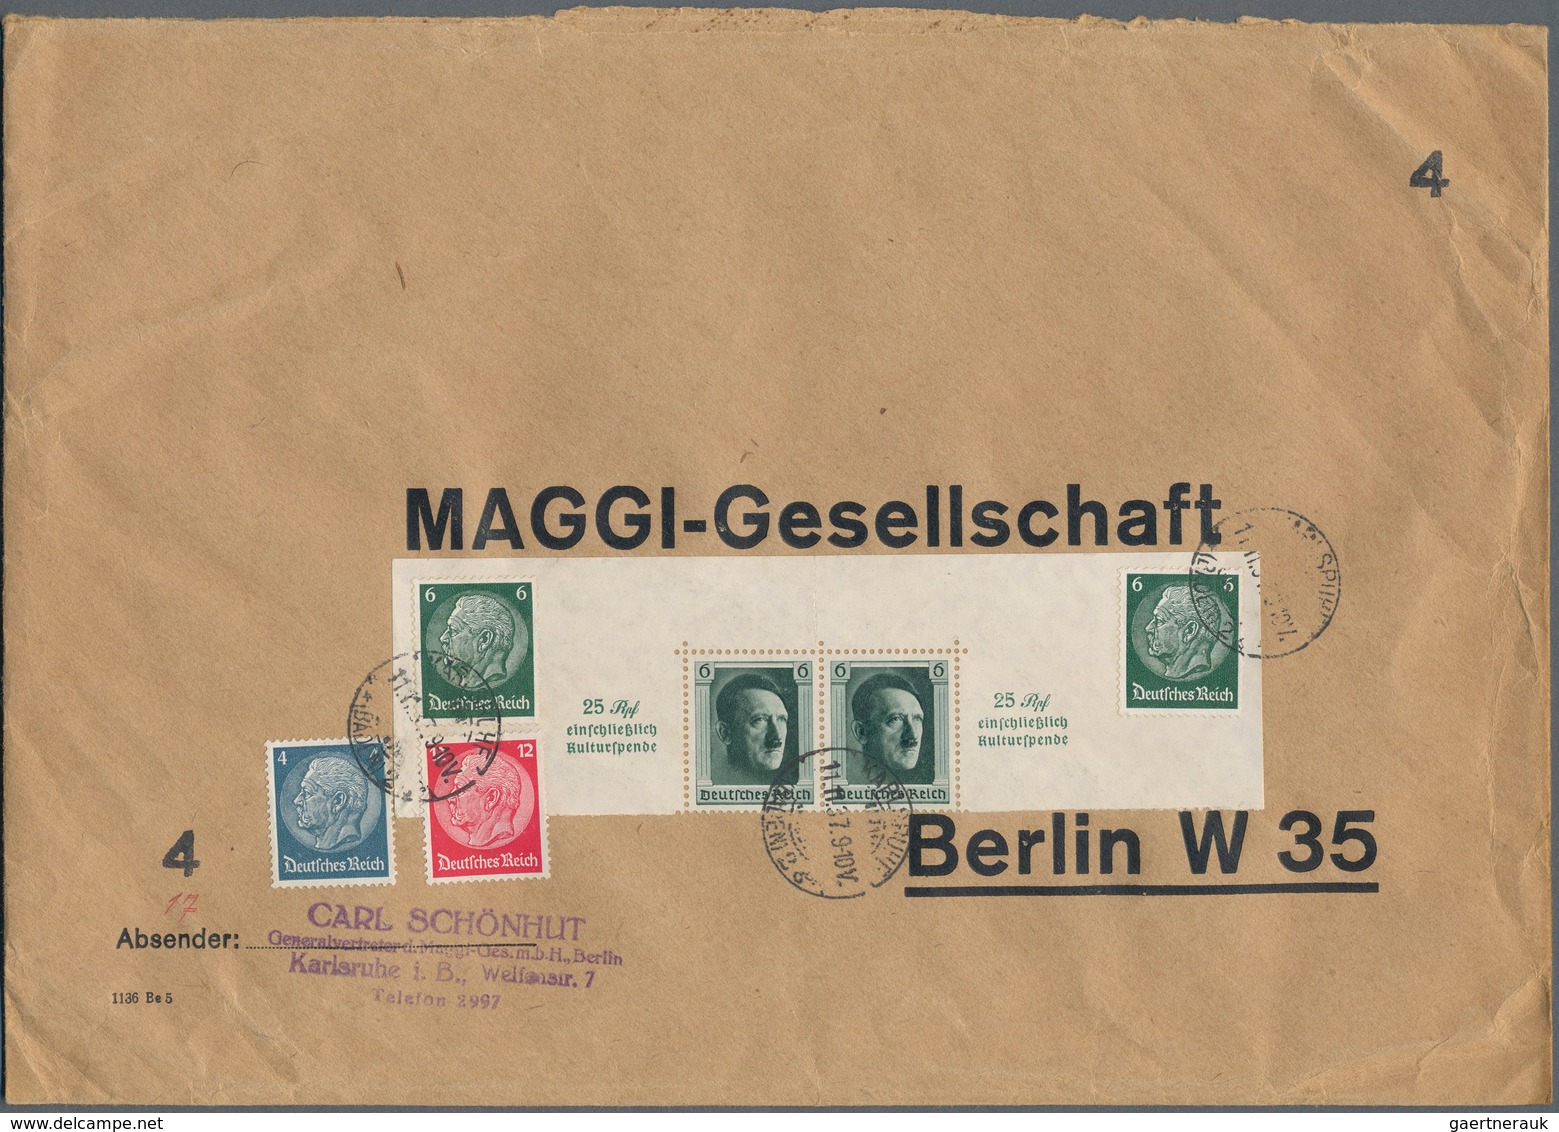 31719 Deutsches Reich - Dienstmarken: 1920/1950 (ca.), Partie Von Ca. 160 Briefen/Karten, Meist Dt.Reich D - Dienstmarken